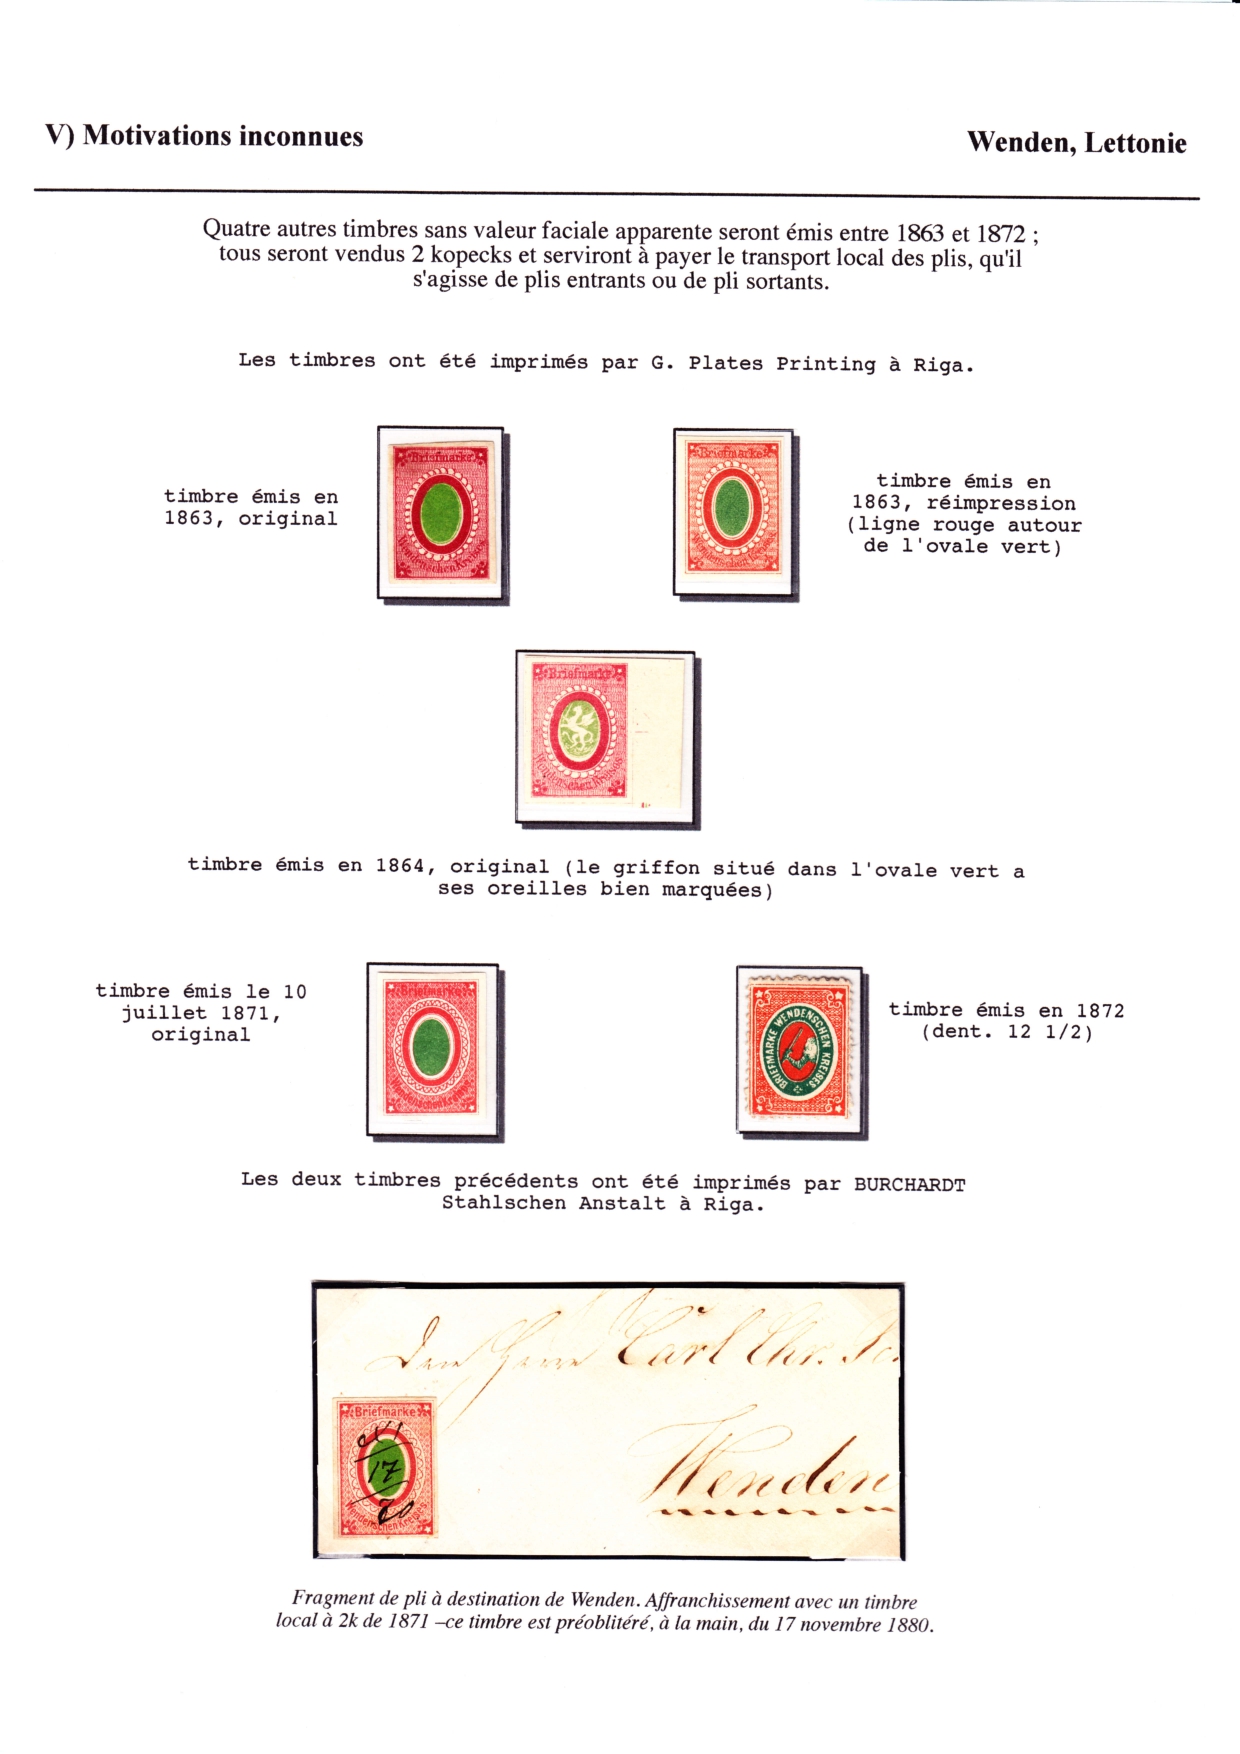 Les d��buts des timbres sans valeur faciale apparente p. 75